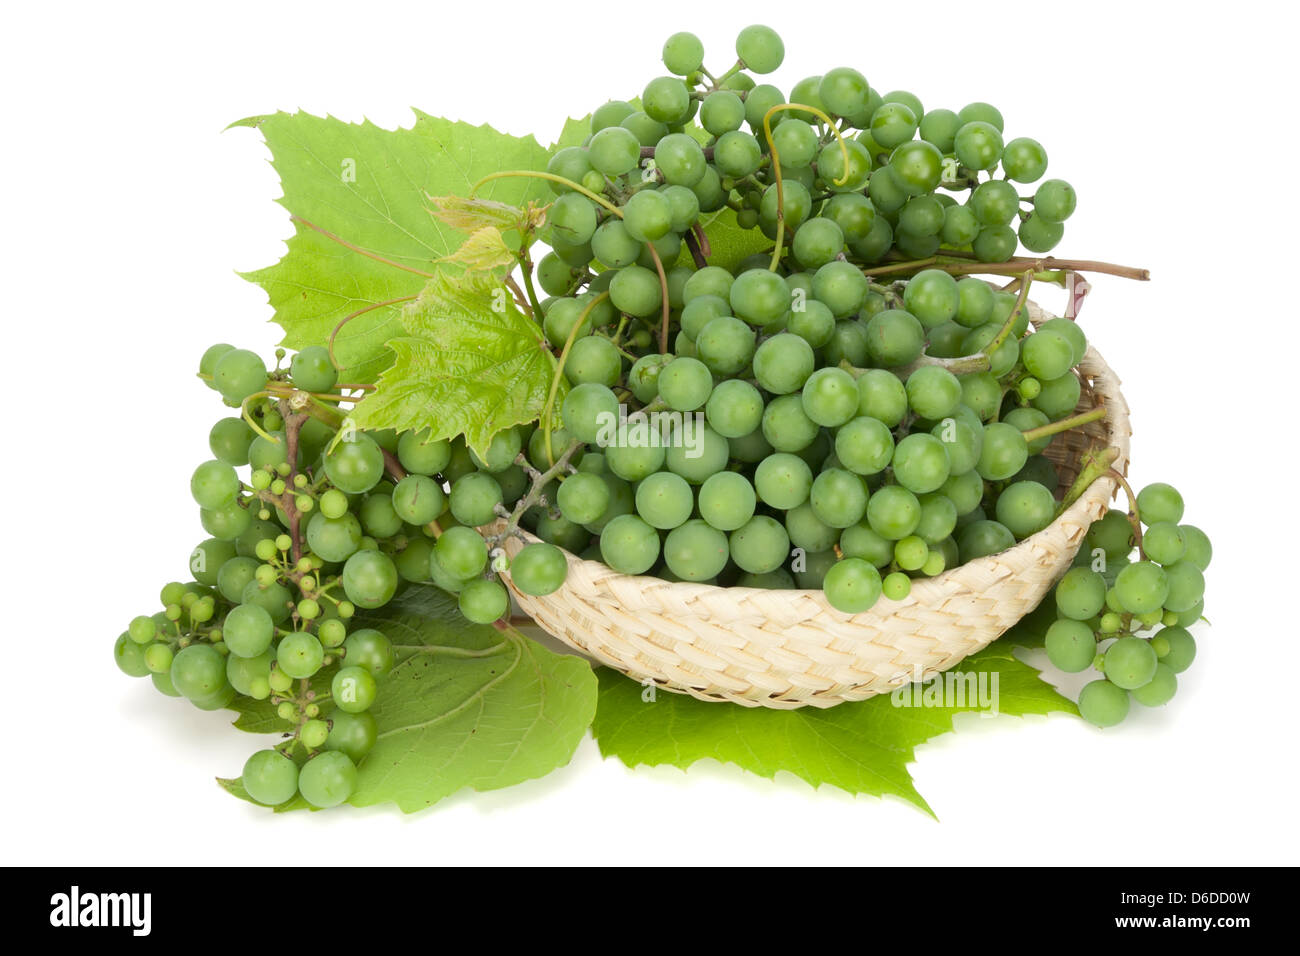 Las uvas verdes se encuentran en una cesta Foto de stock